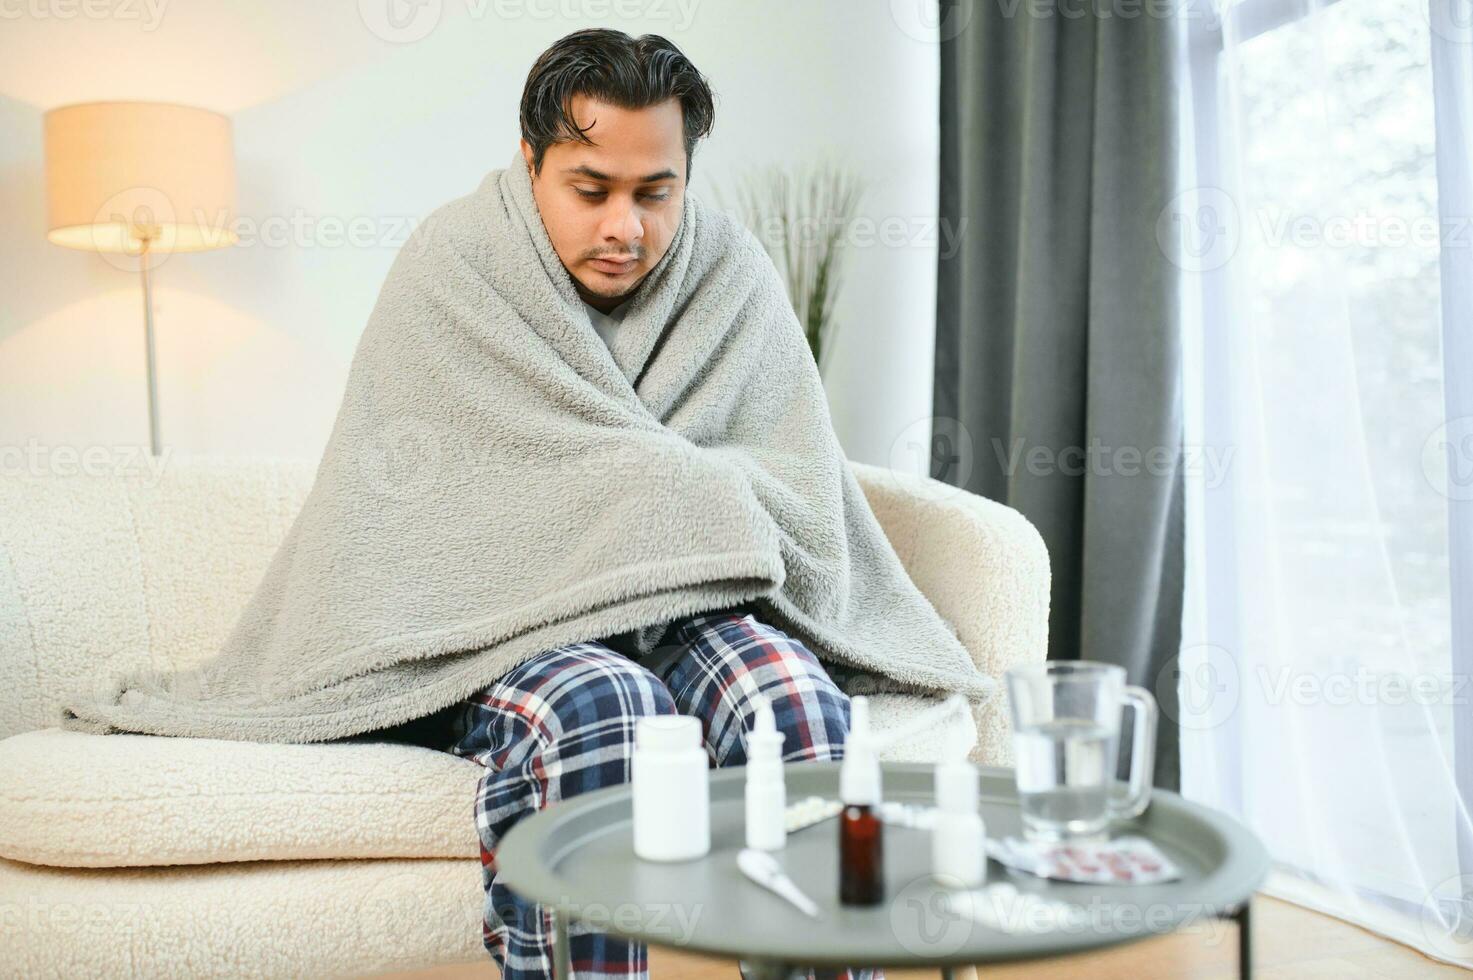 krank indisch Mann im Plaid sitzen allein Zittern von kalt. ungesund arabisch Kerl sitzen auf Stuhl Gefühl Beschwerden Versuchen zu Erwärmen oben foto